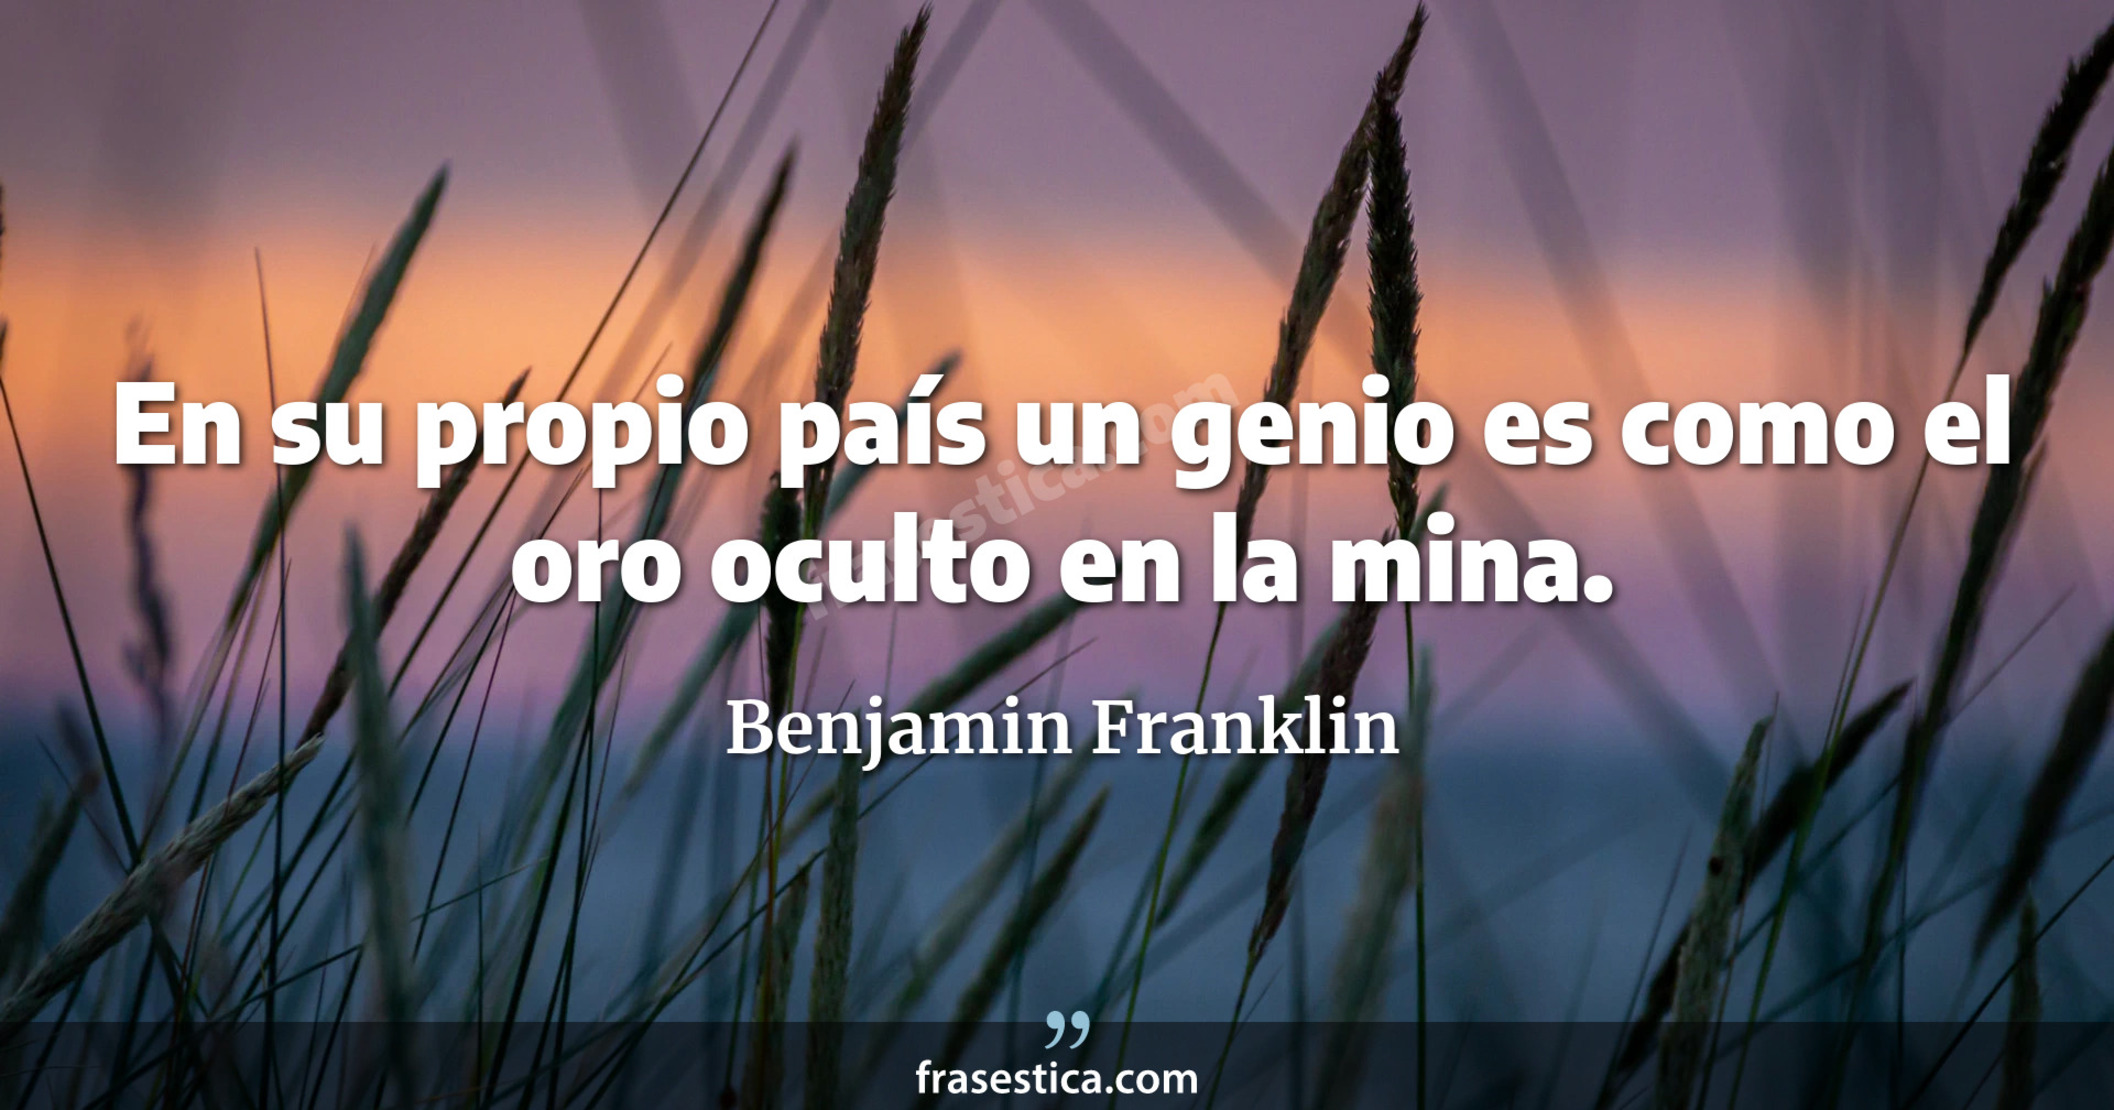 En su propio país un genio es como el oro oculto en la mina. - Benjamin Franklin